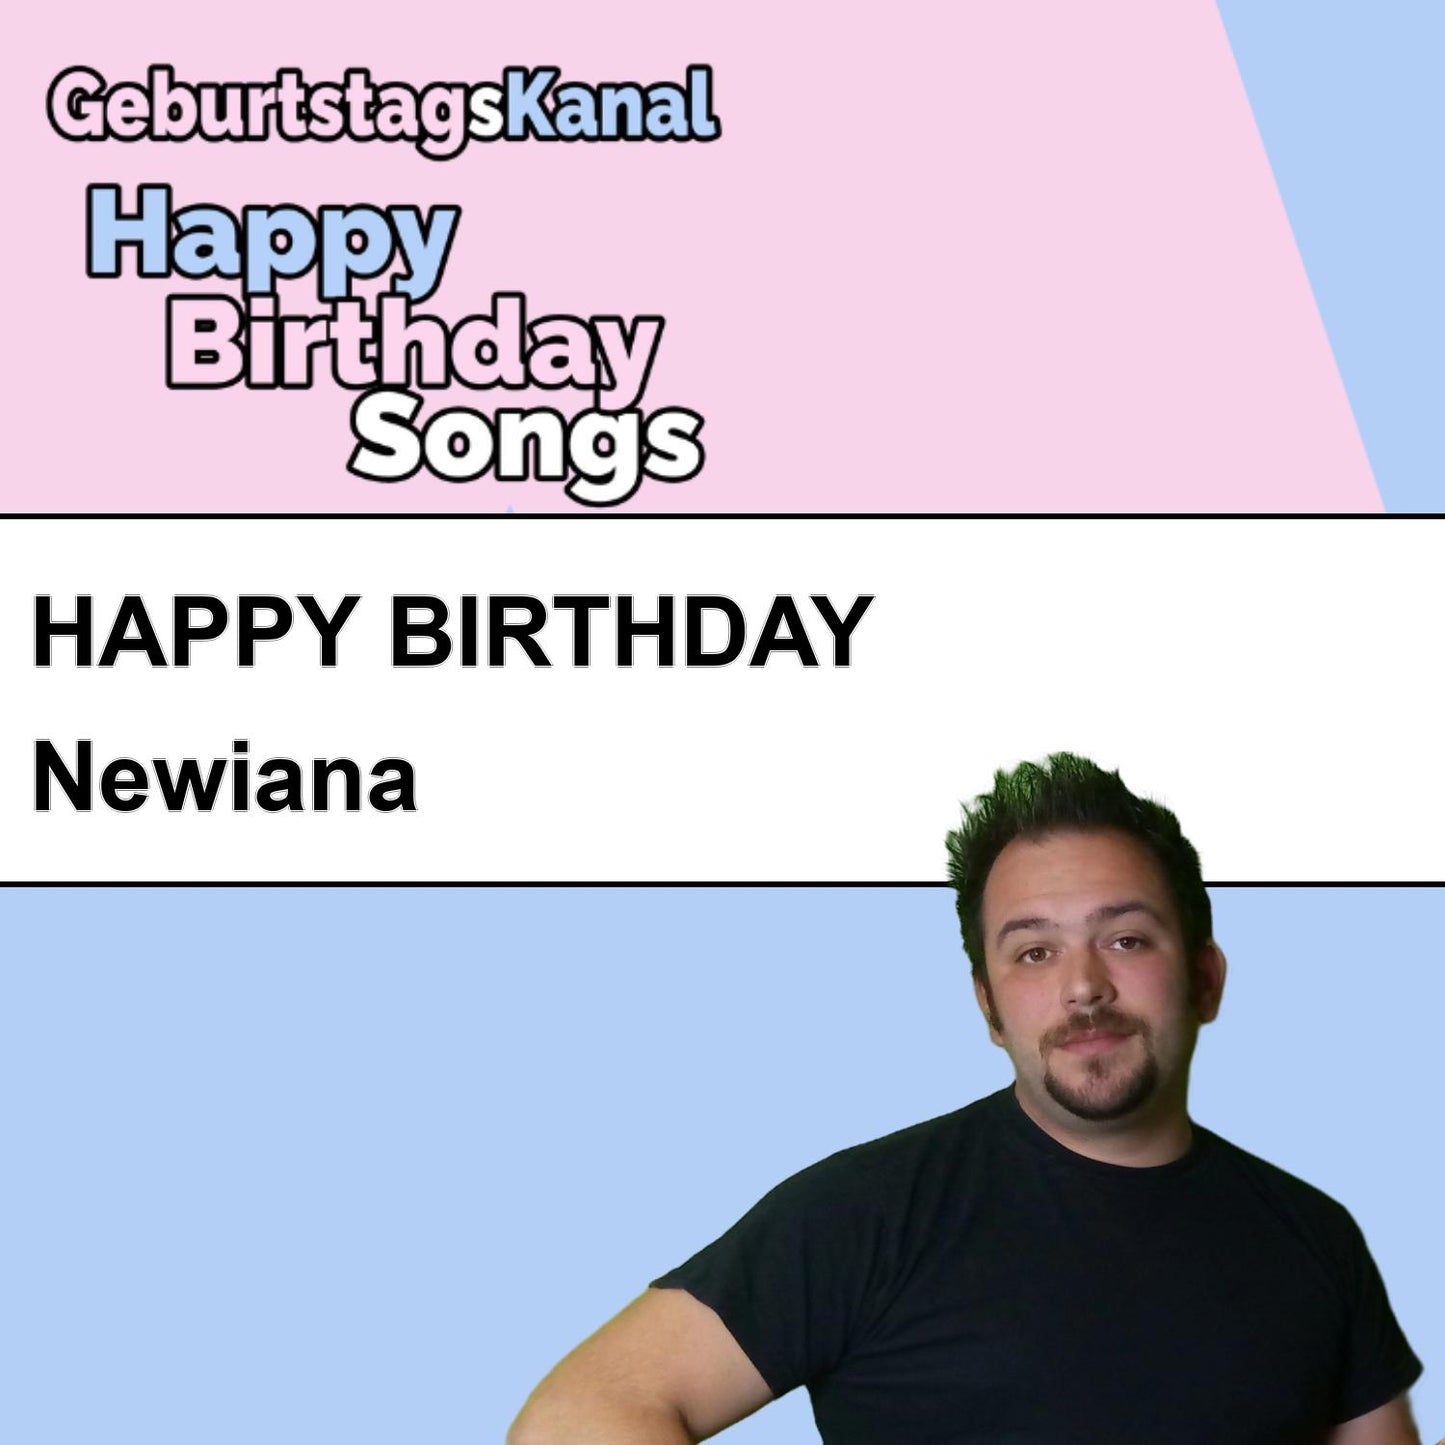 Produktbild Happy Birthday to you Newiana mit Wunschgrußbotschaft